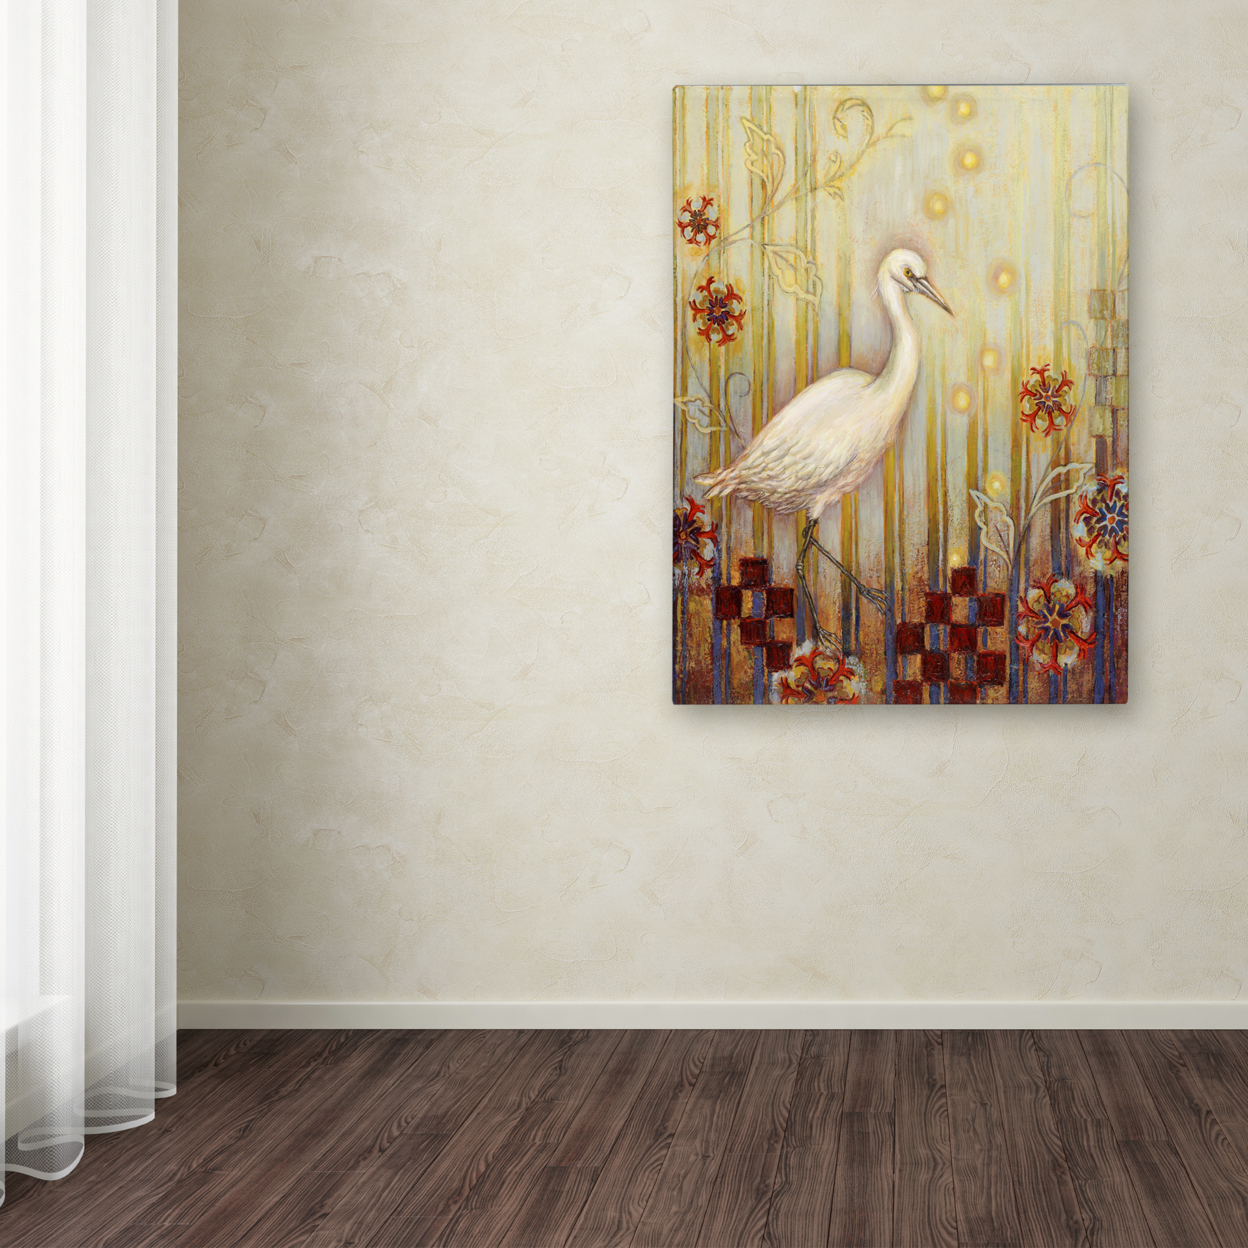 Rachel Paxton 'Ocean Heron' Canvas Wall Art 35 X 47 Inches